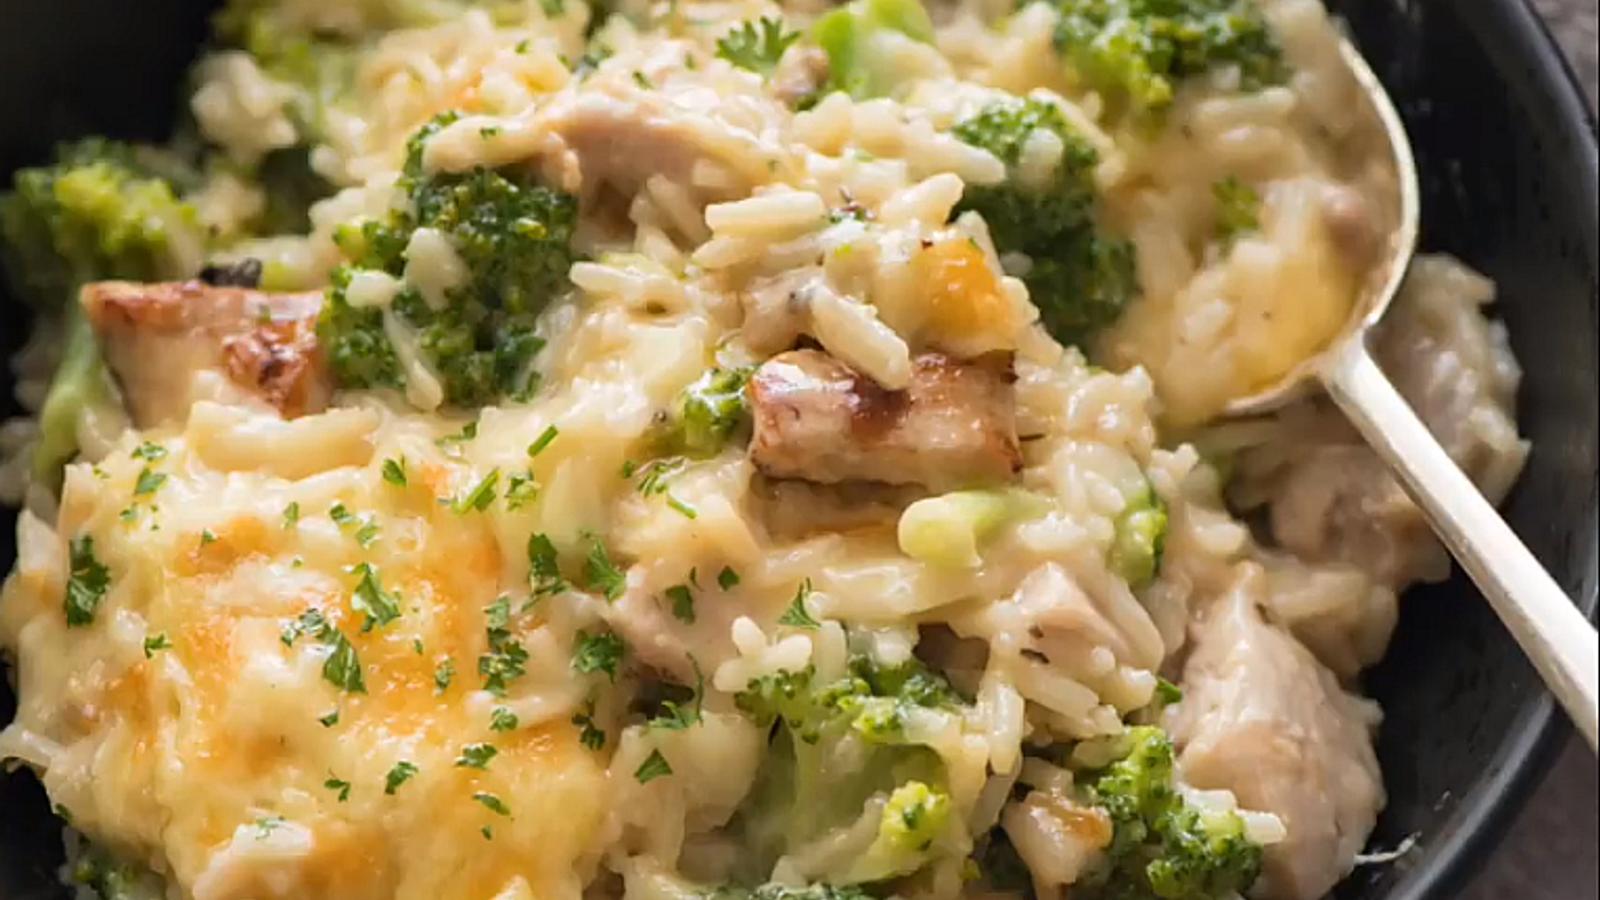 Le meilleur risotto poulet, brocoli et fromage 